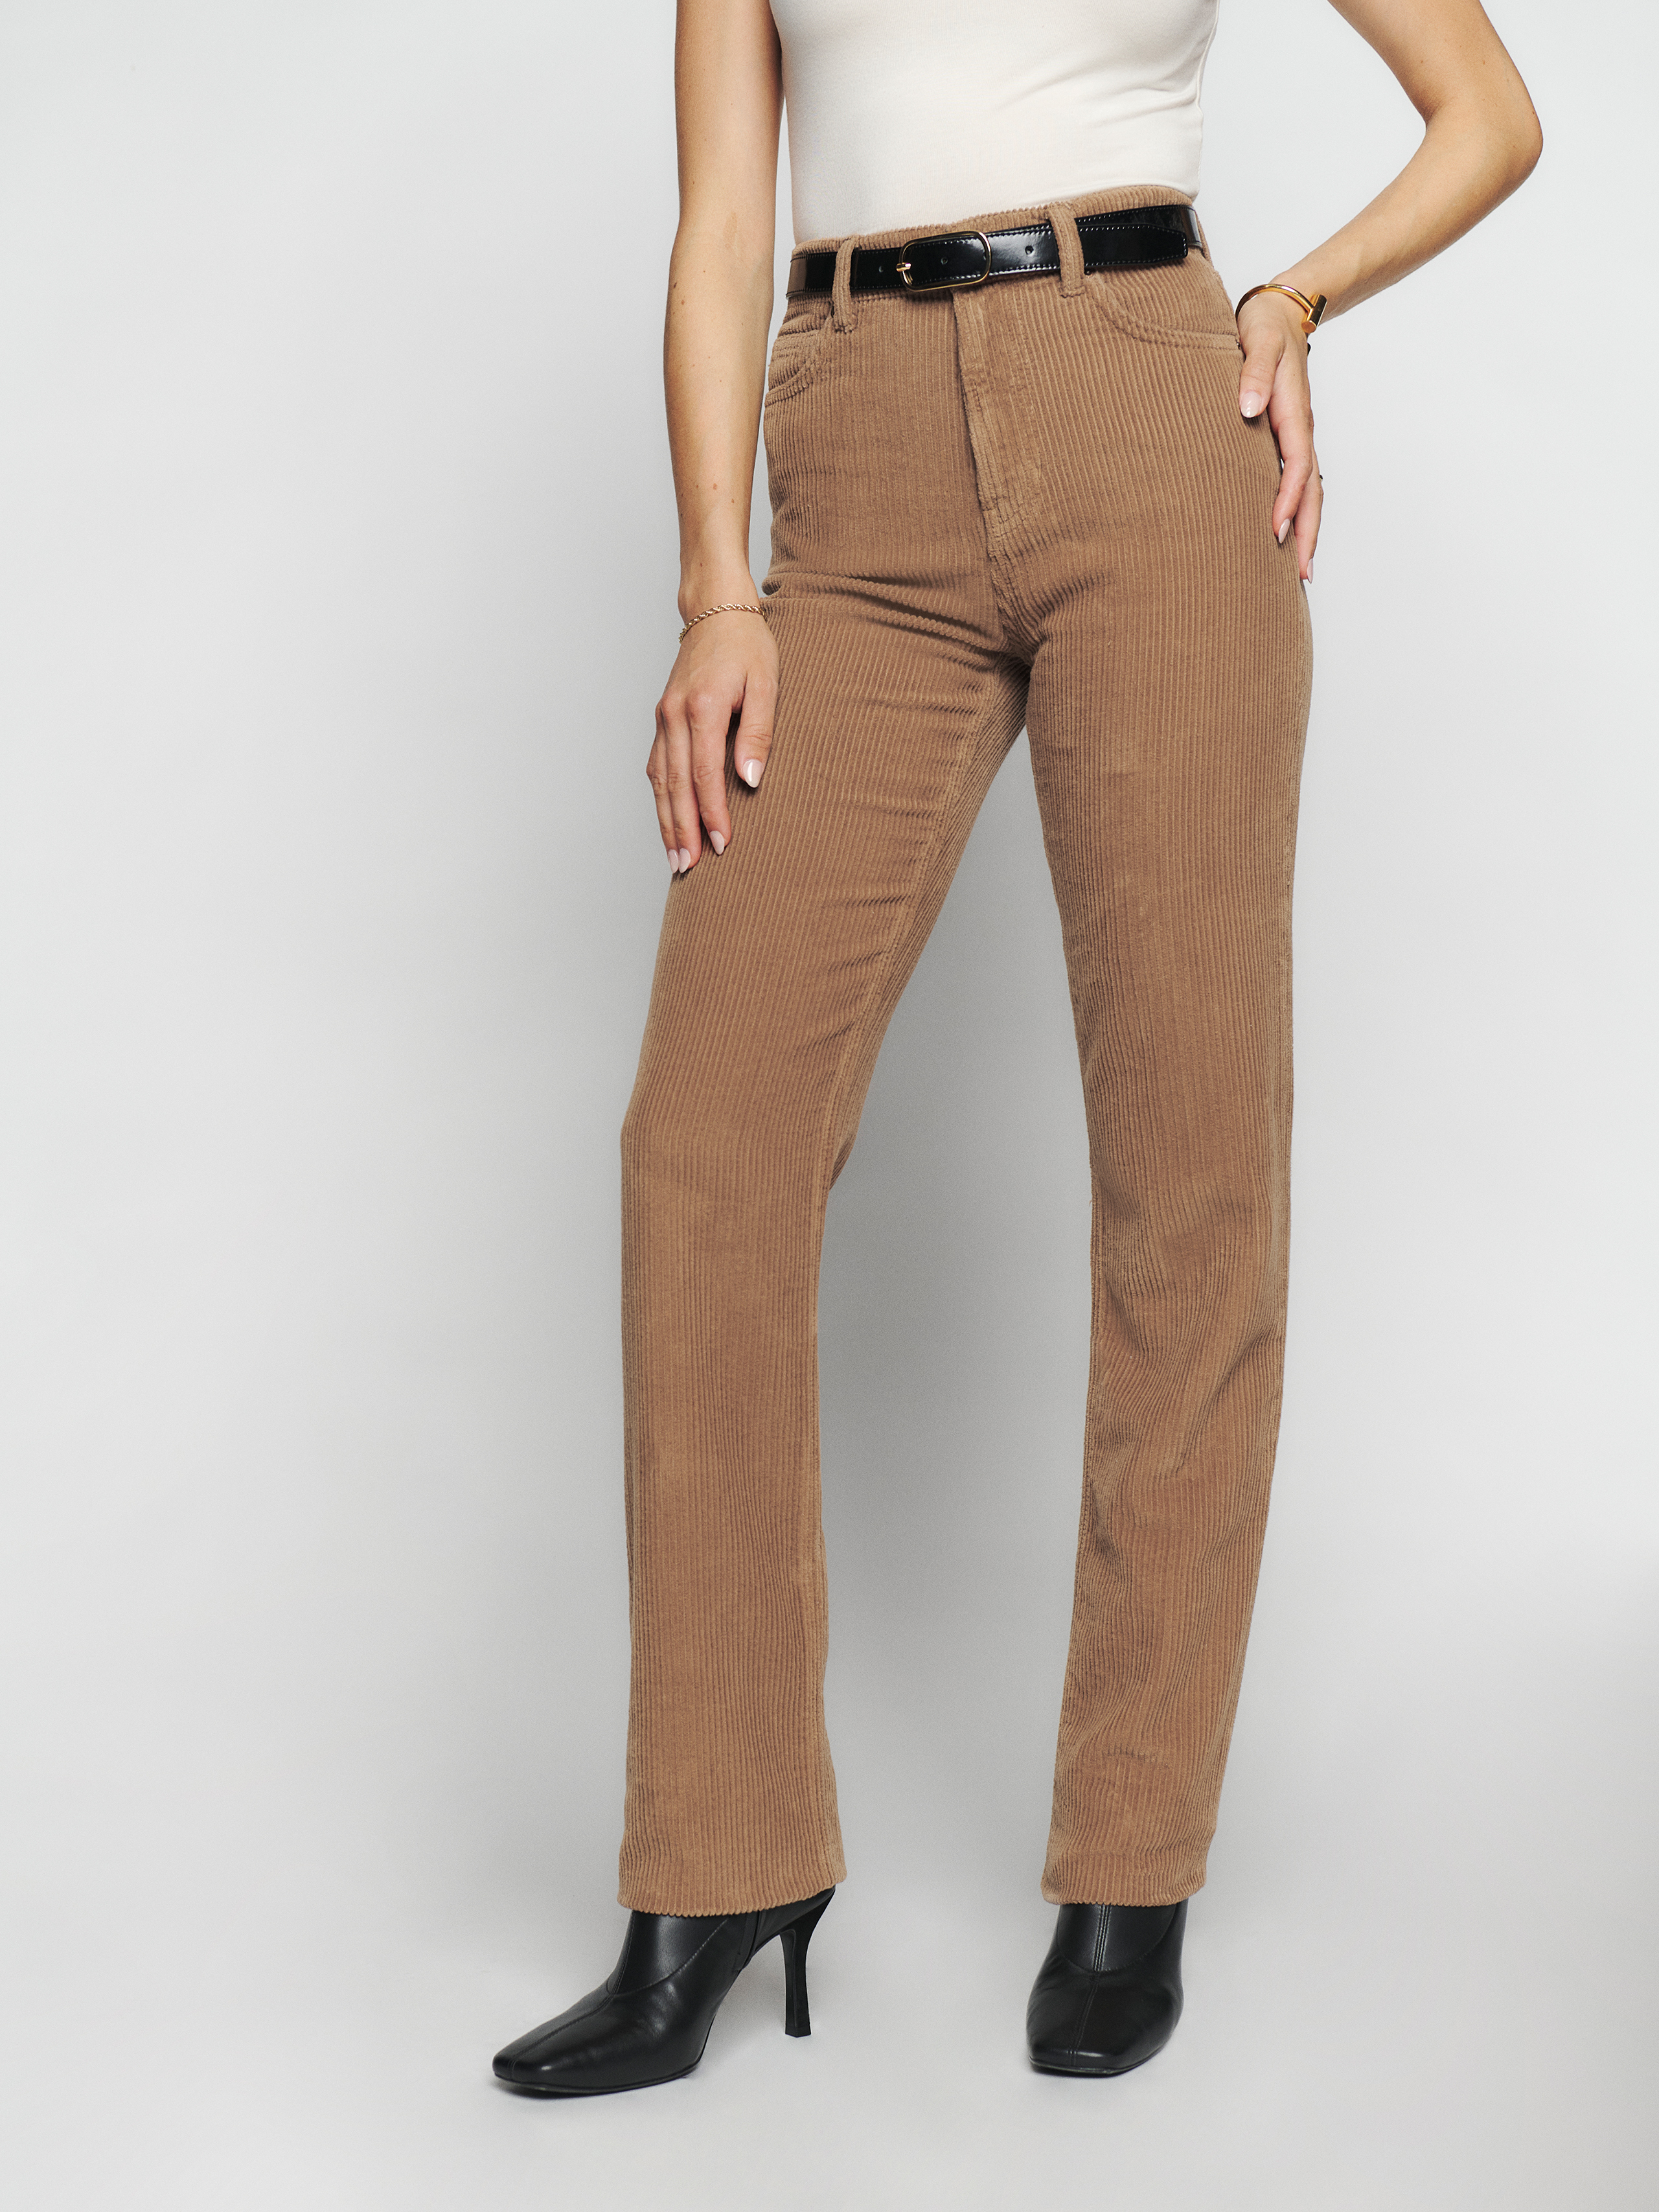 The Best Brown Corduroy Pants to Buy in 2023